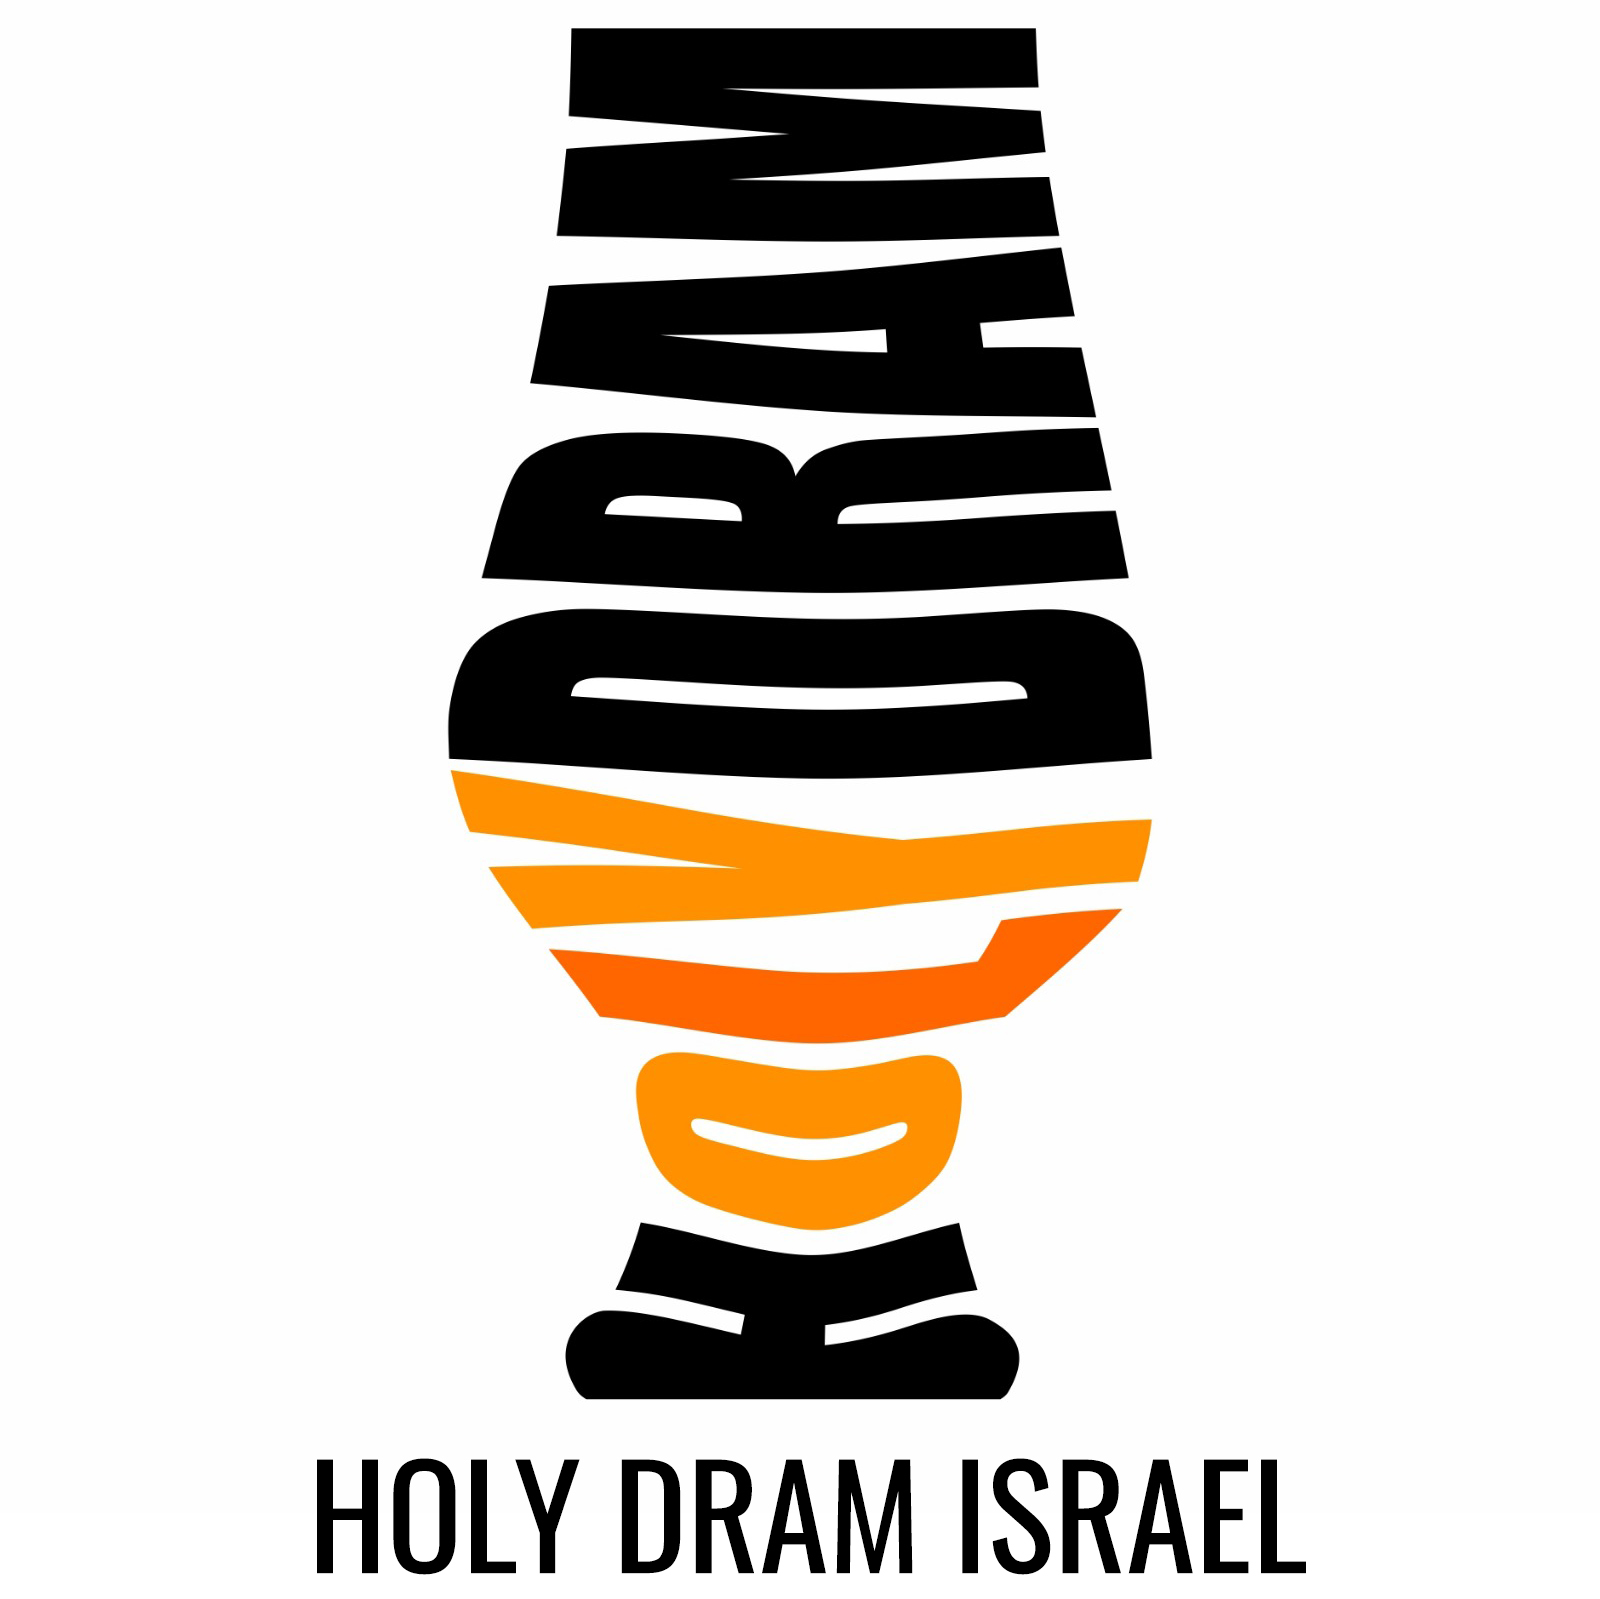 HolyDram Israel